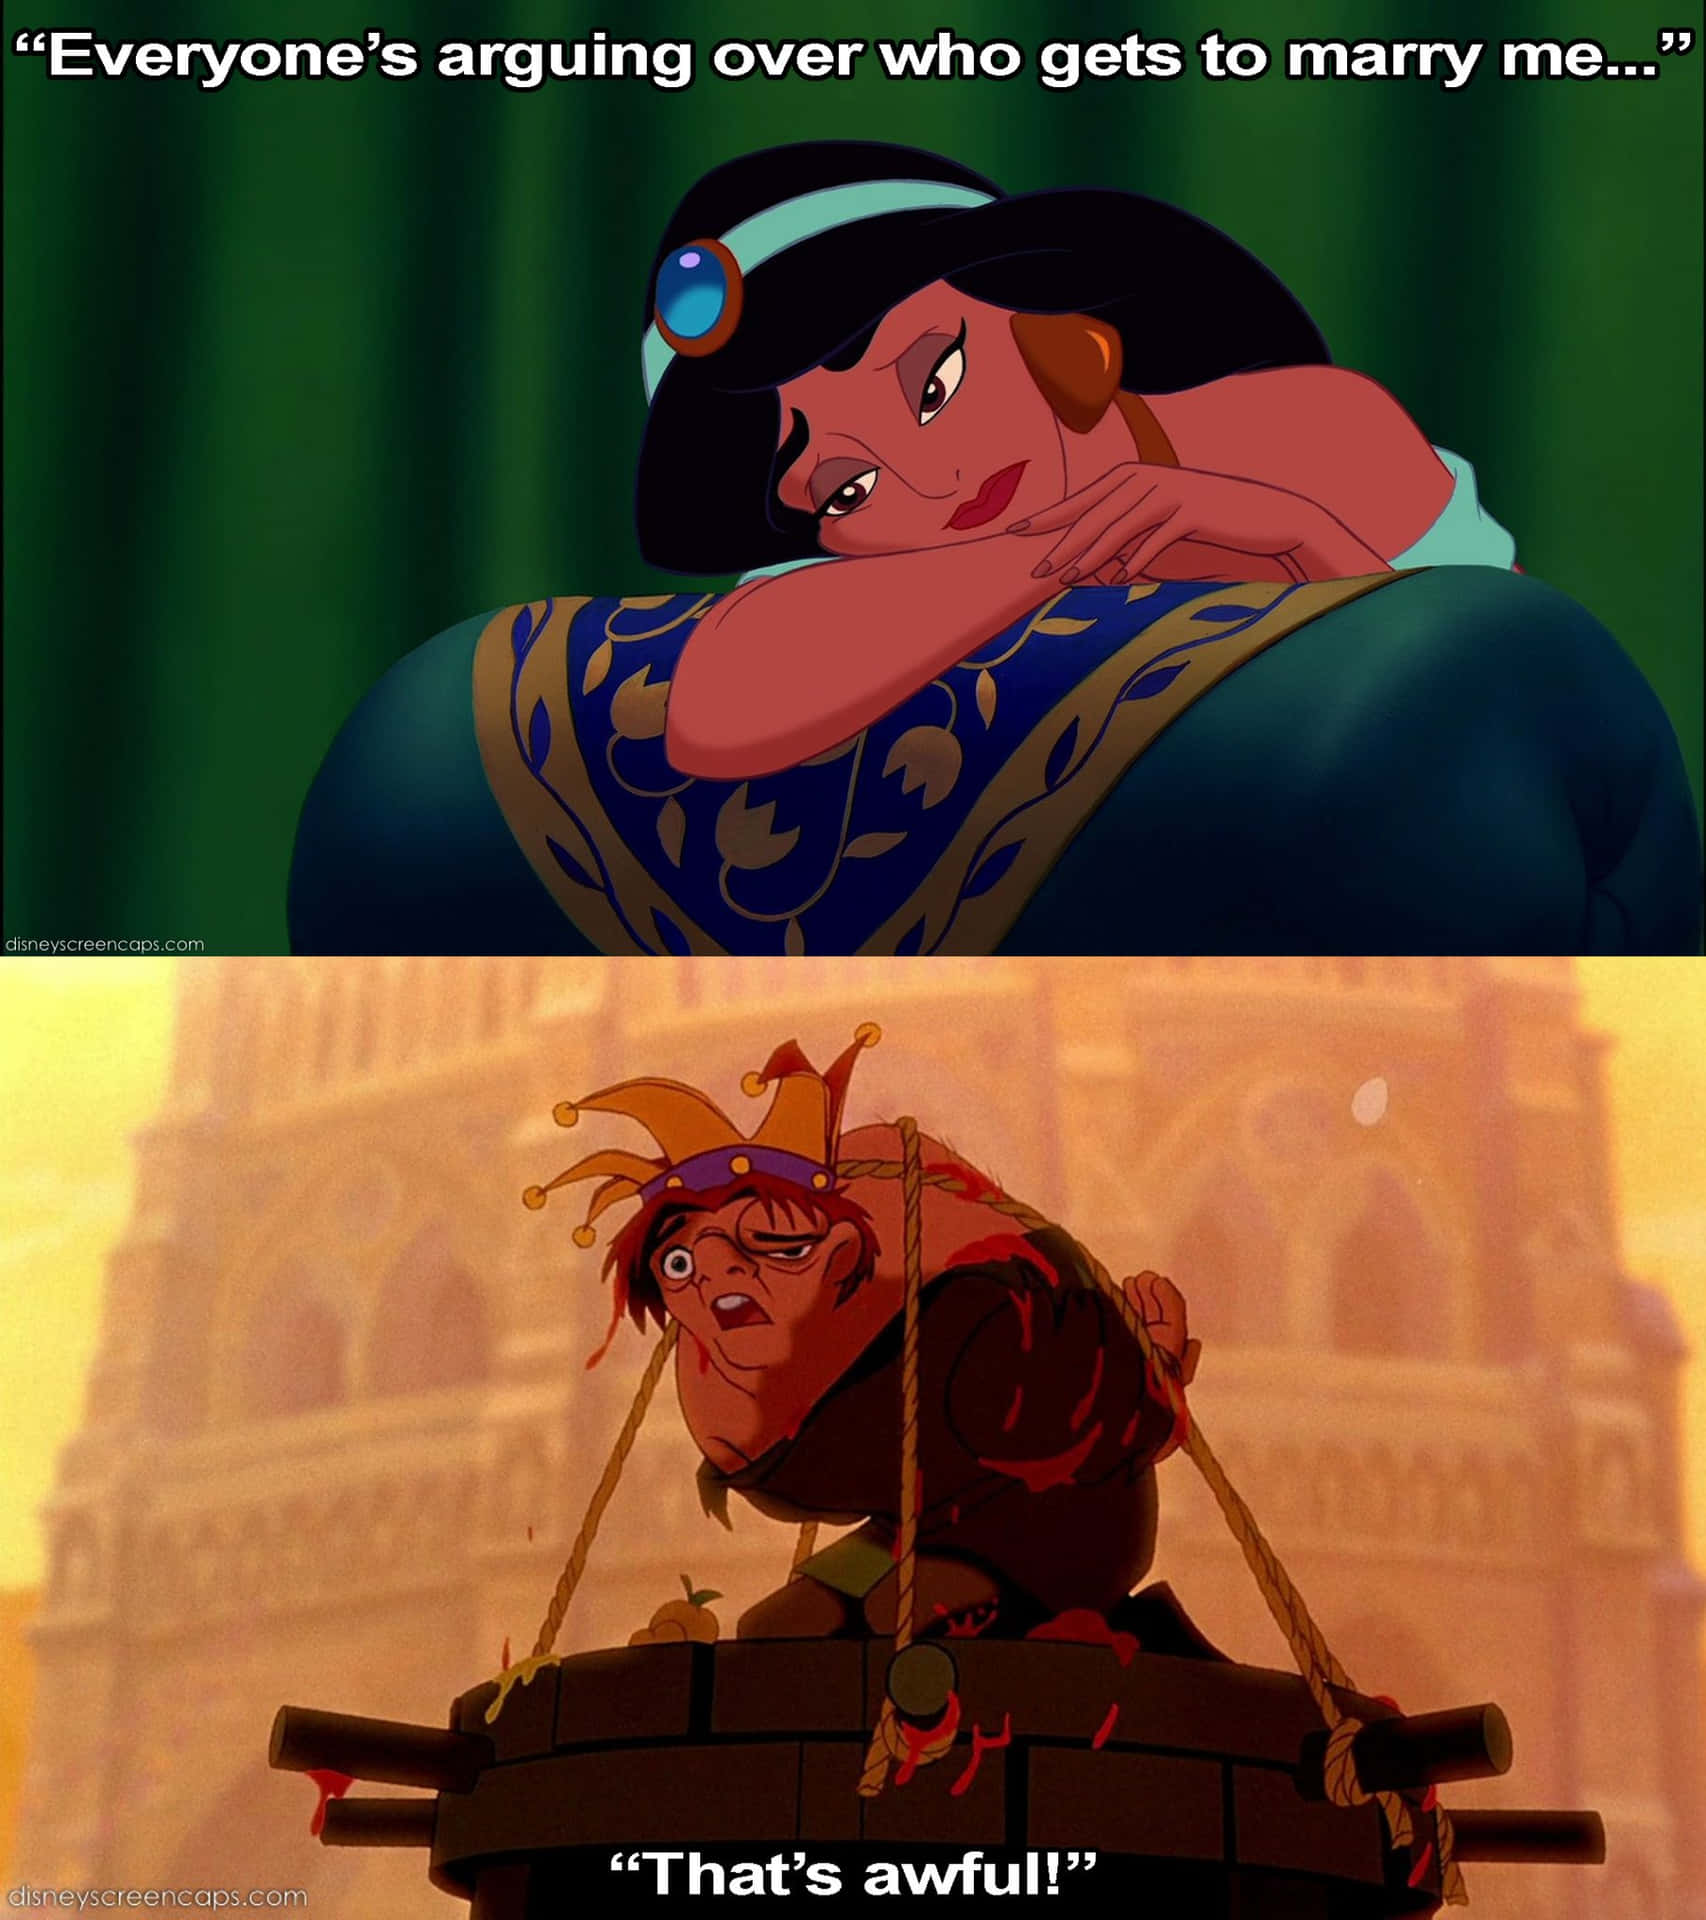 Imagemengraçada Da Disney De Jasmine E Quasimodo Para Papel De Parede De Computador Ou Celular.